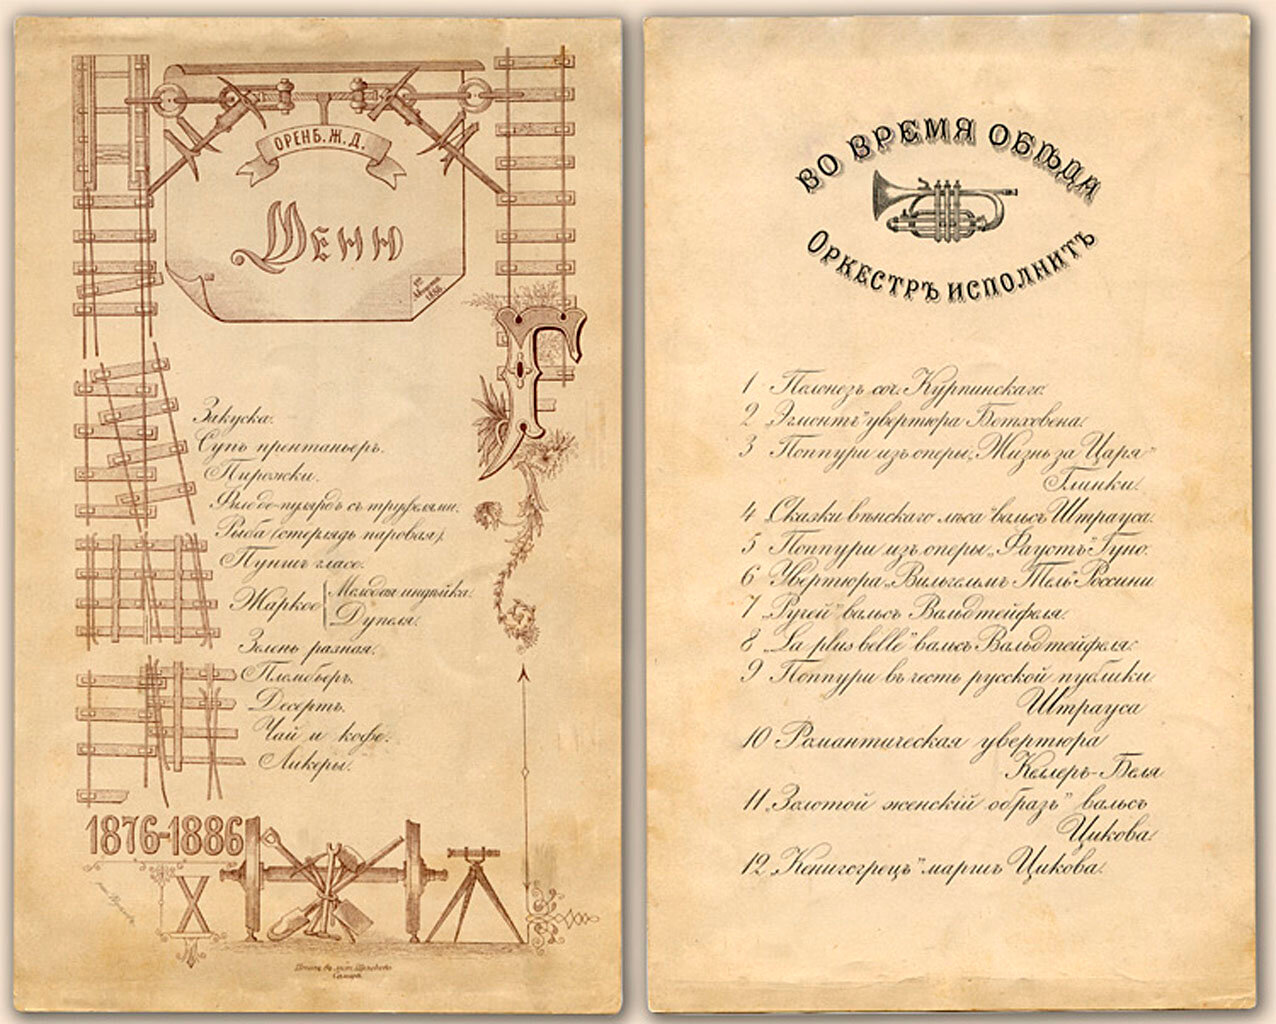 Меню обеда 1 августа 1886 г. в честь 10-летия Оренбургской железной дороги